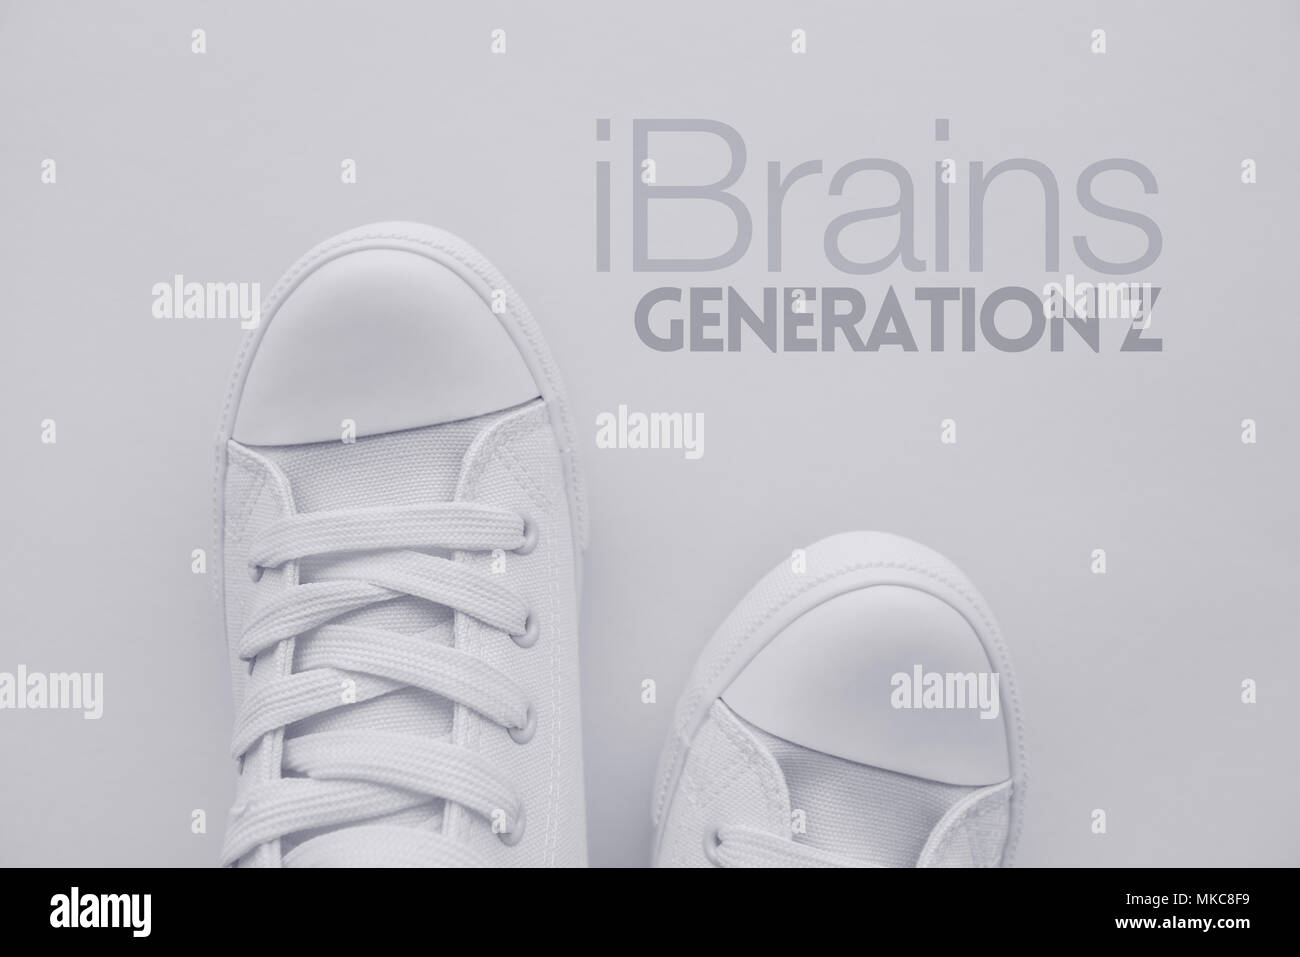 IBrains oder Generation Z Konzept. Mitglied der so genannten selfie Generation in weiß casual canvas Schuhe über den Titel stehen, Ansicht von oben Stockfoto